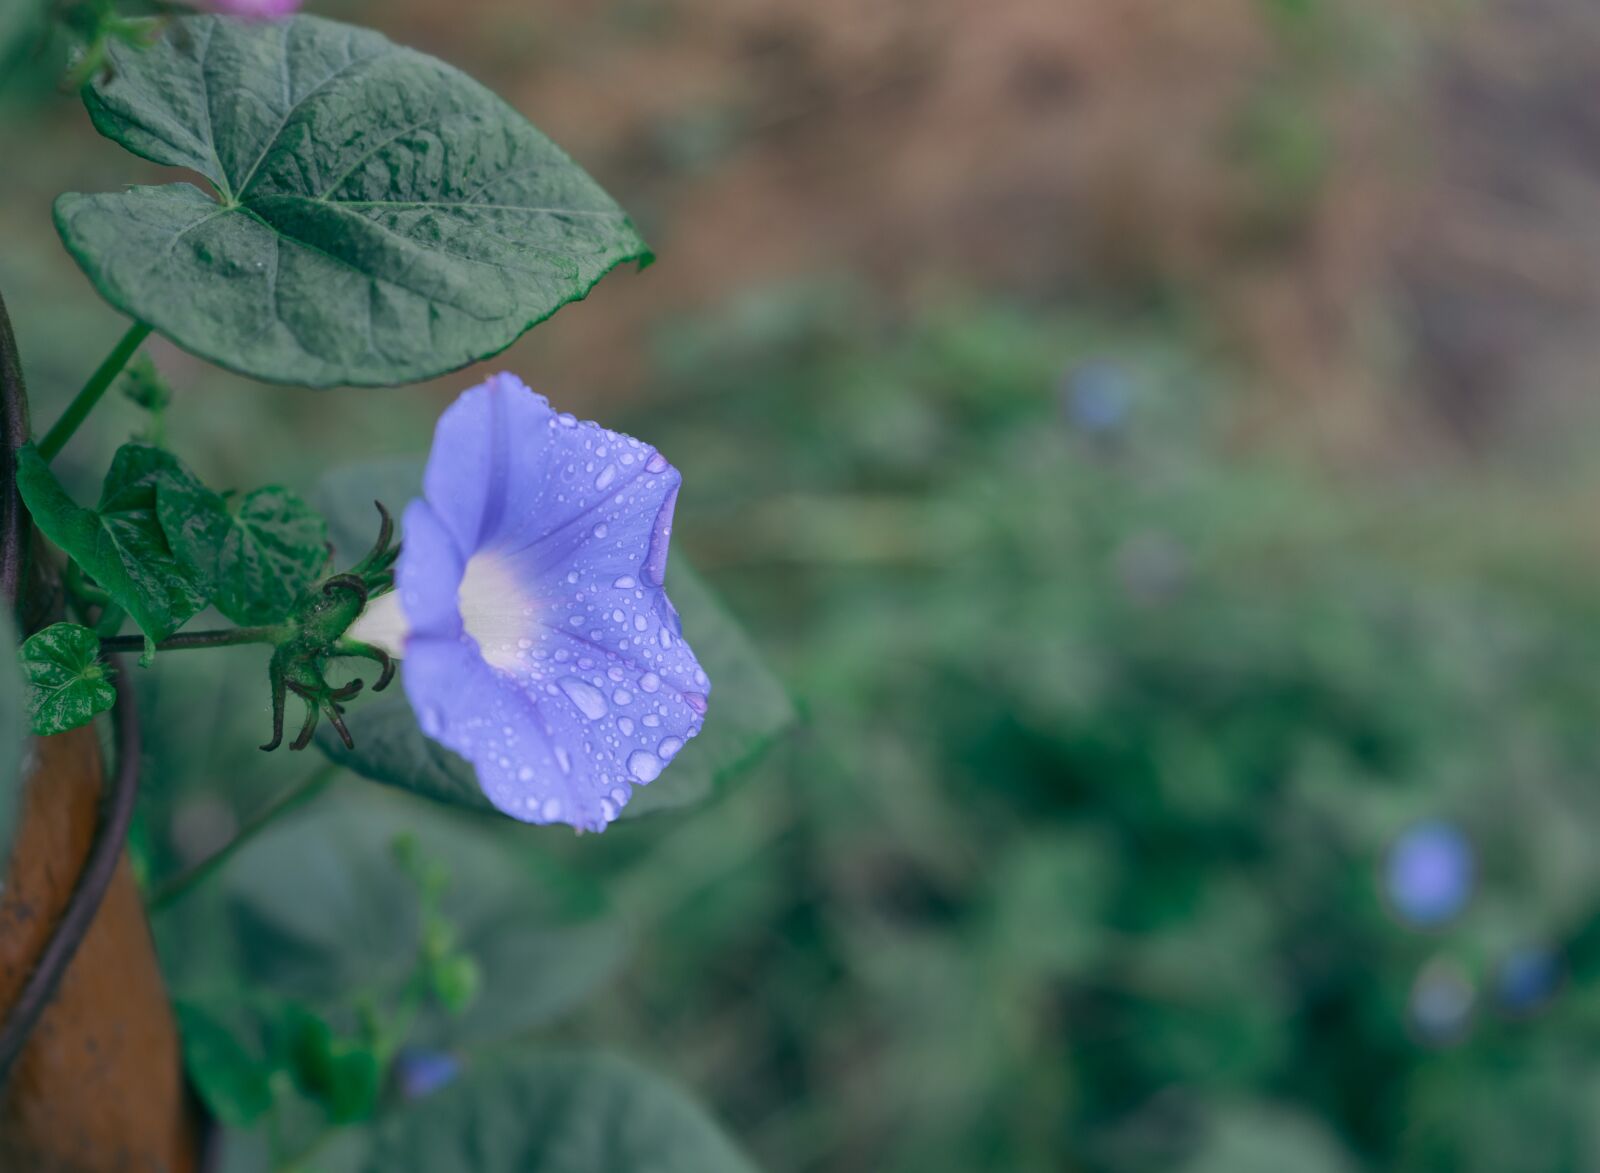 Sony a7 + Sony FE 28-70mm F3.5-5.6 OSS sample photo. Blue, flower, rain photography